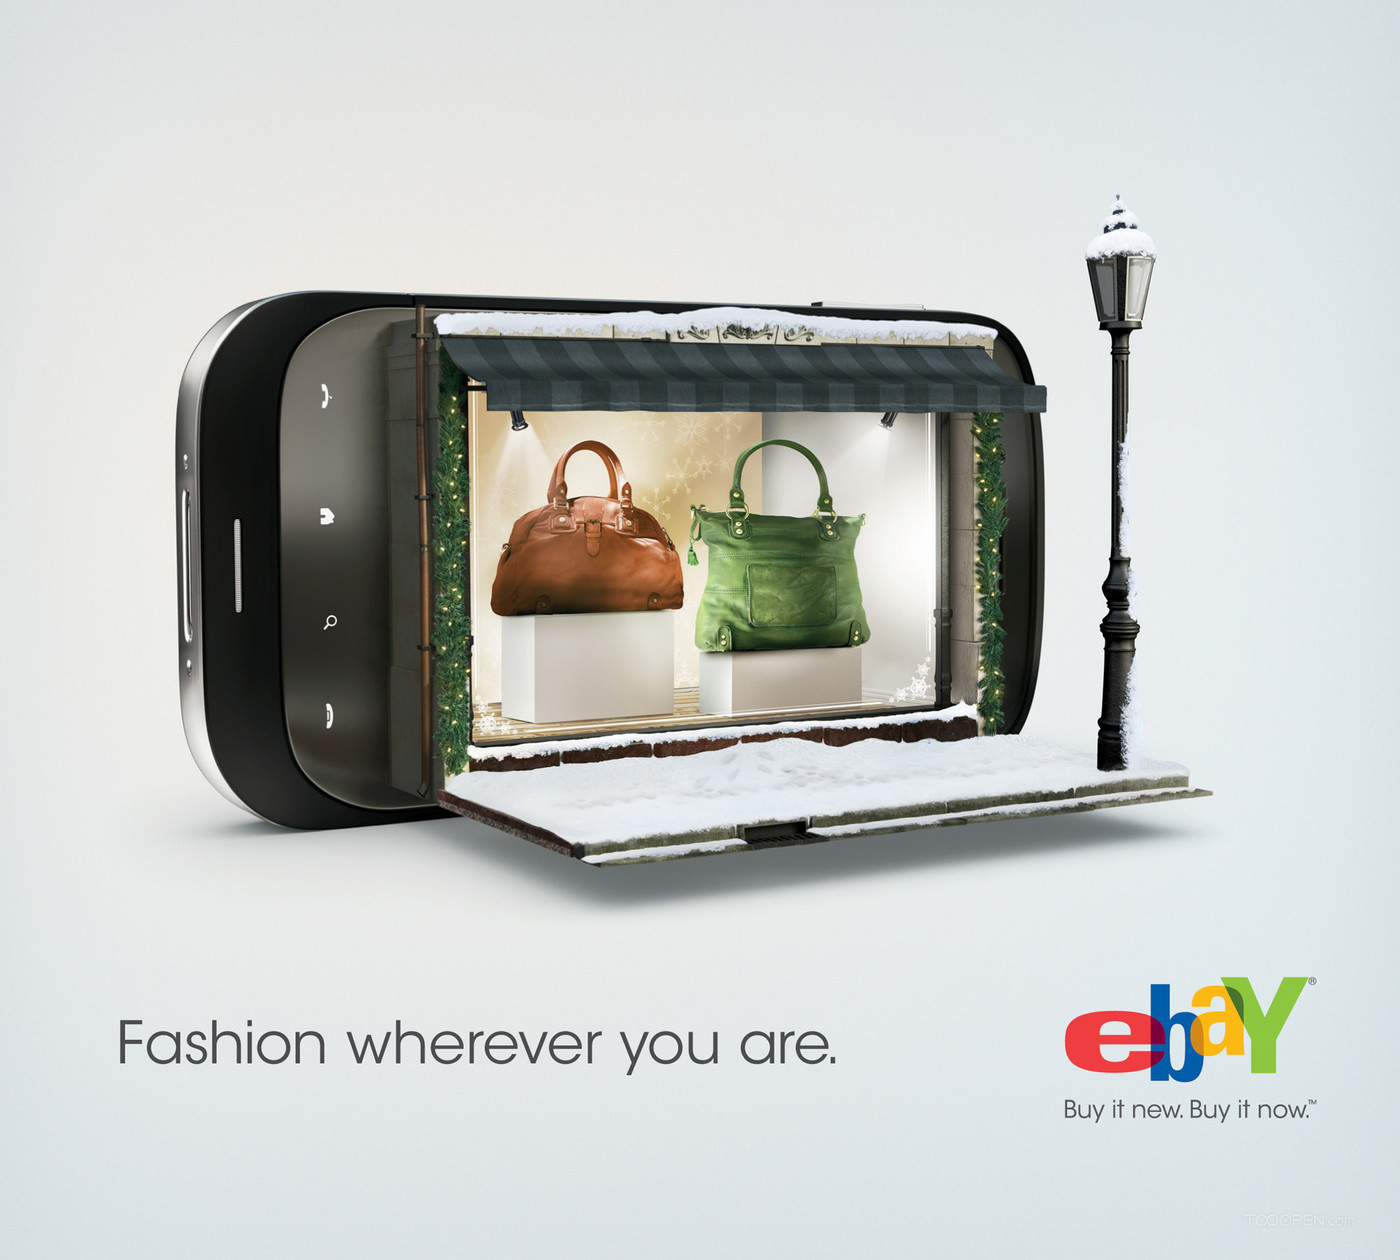 ebay手机商店平面广告海报欣赏-02